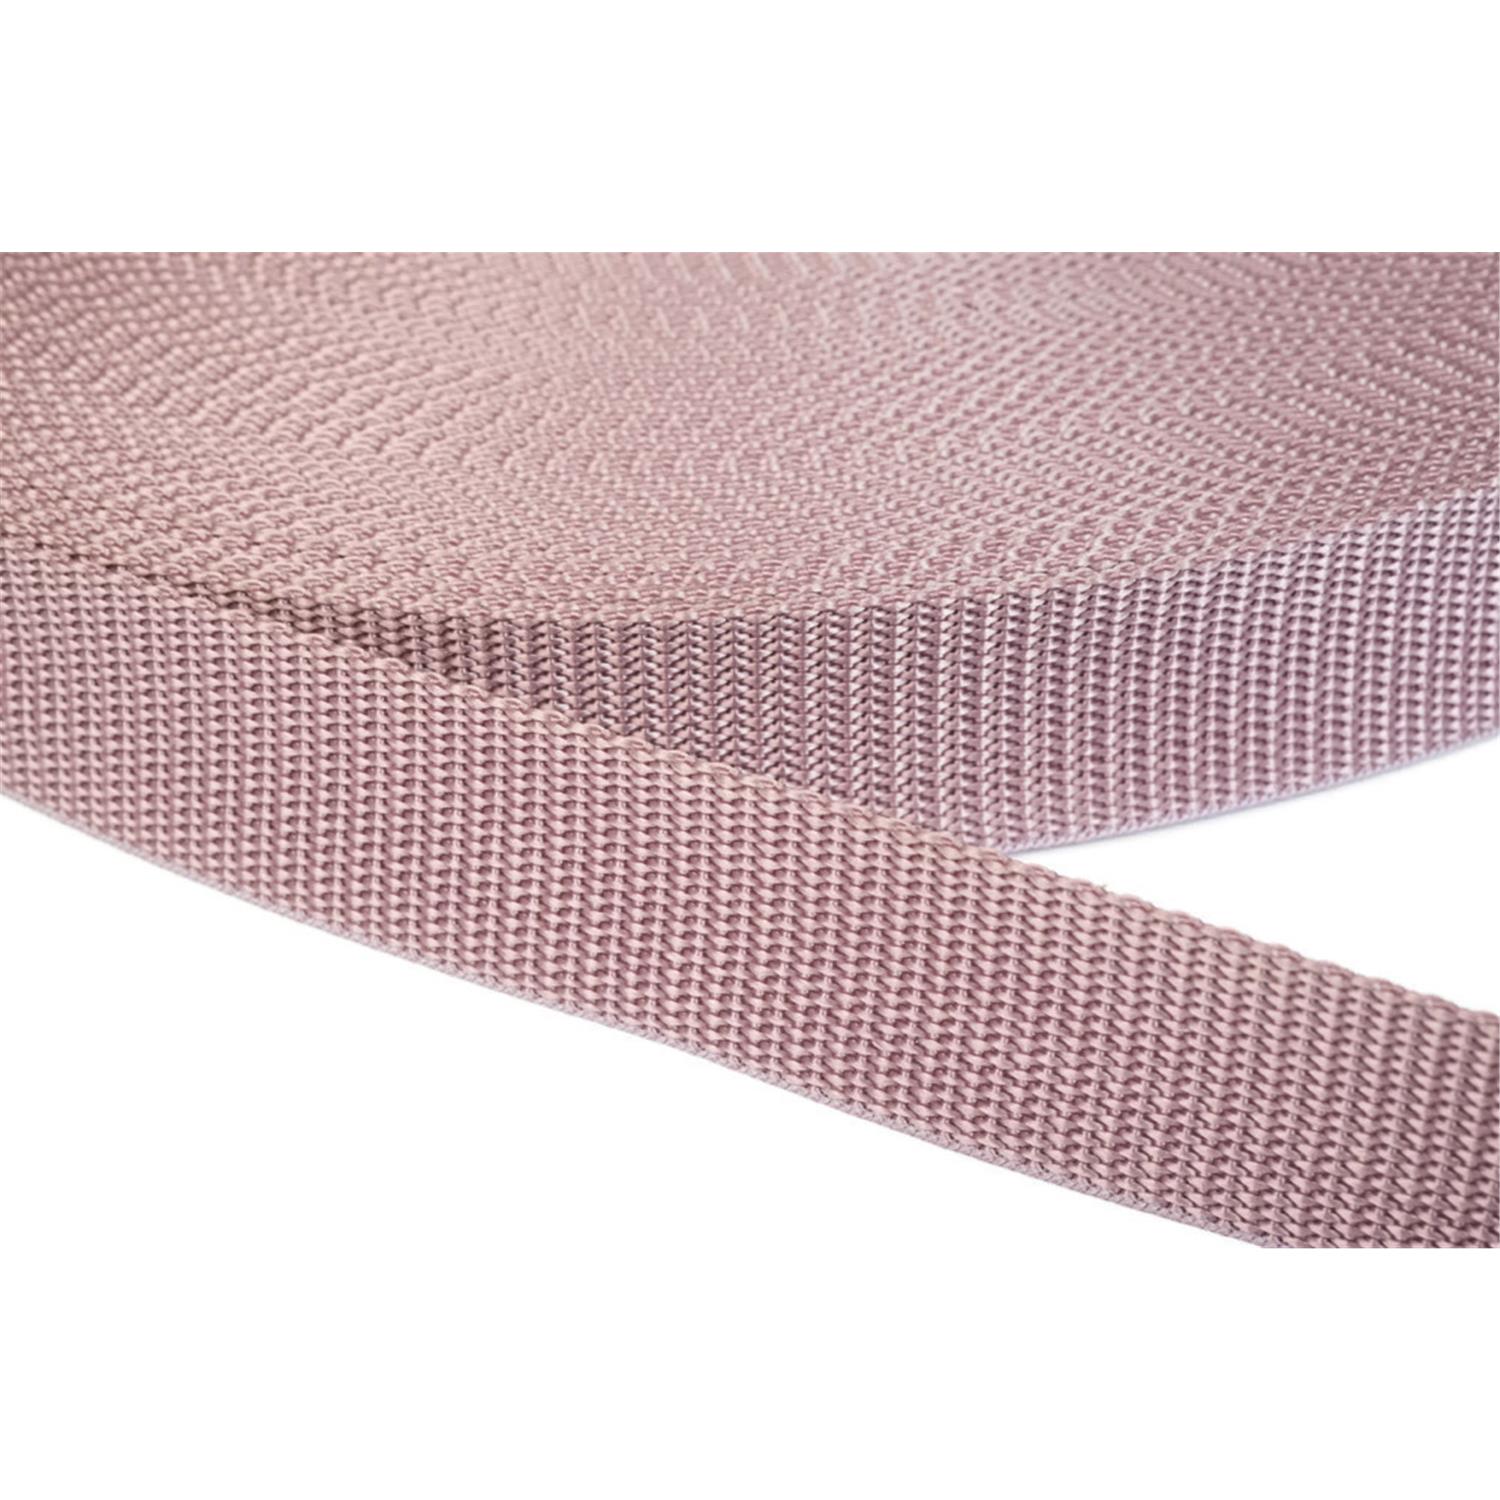 Gurtband 10mm breit aus Polypropylen in 41 Farben 15 - altrosa 12 Meter